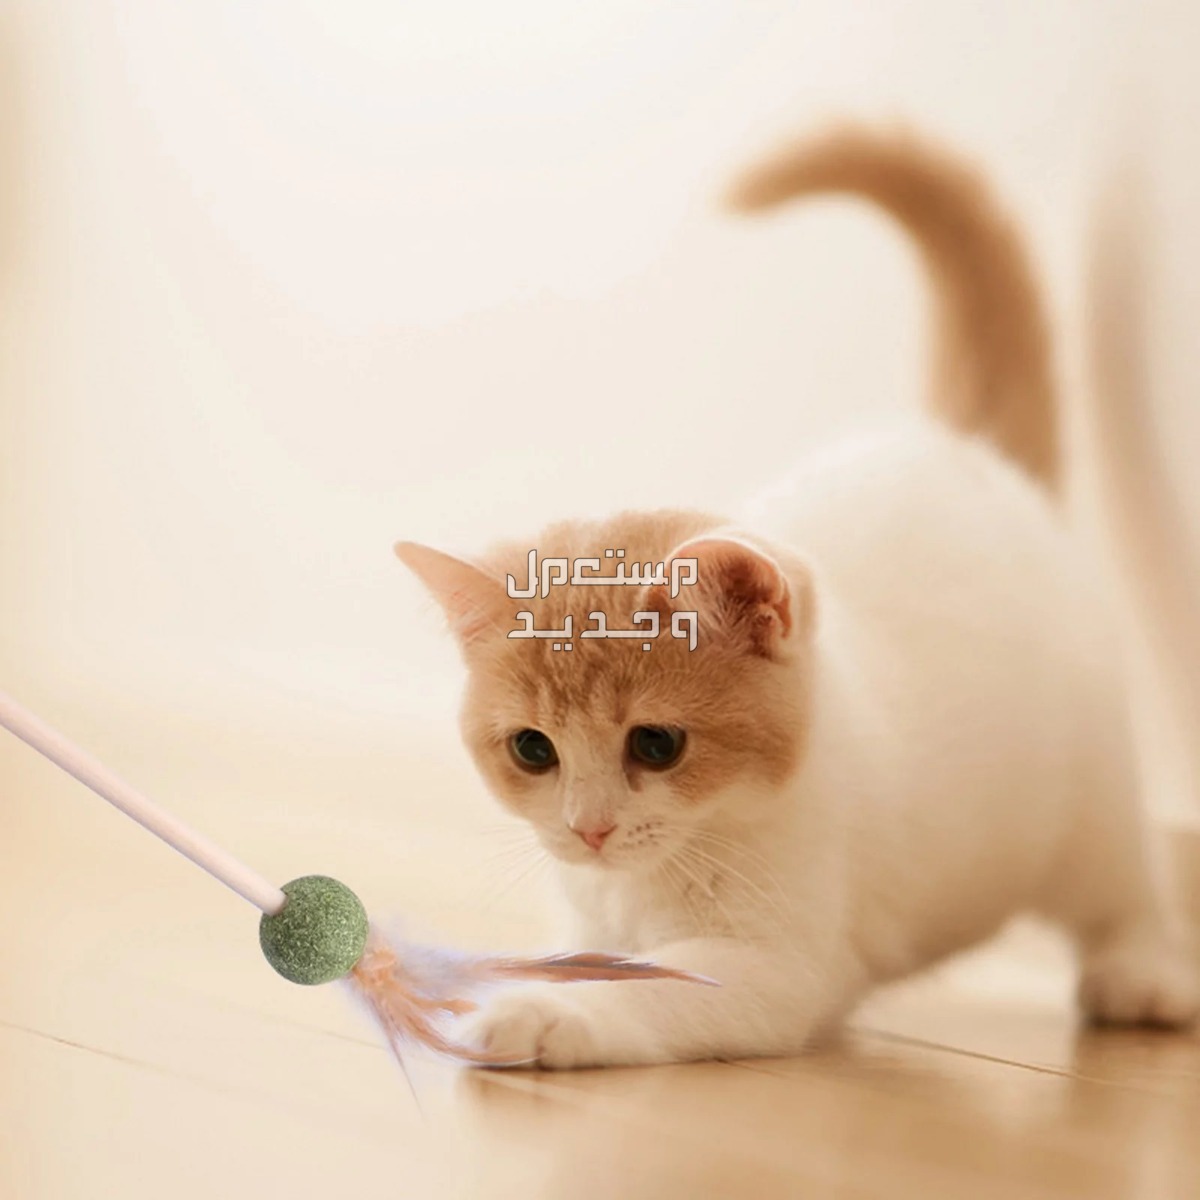 لمحبي القطط - تعرف على أفضل العاب قطط متحركة في مصر قطة تلعب بالريشة